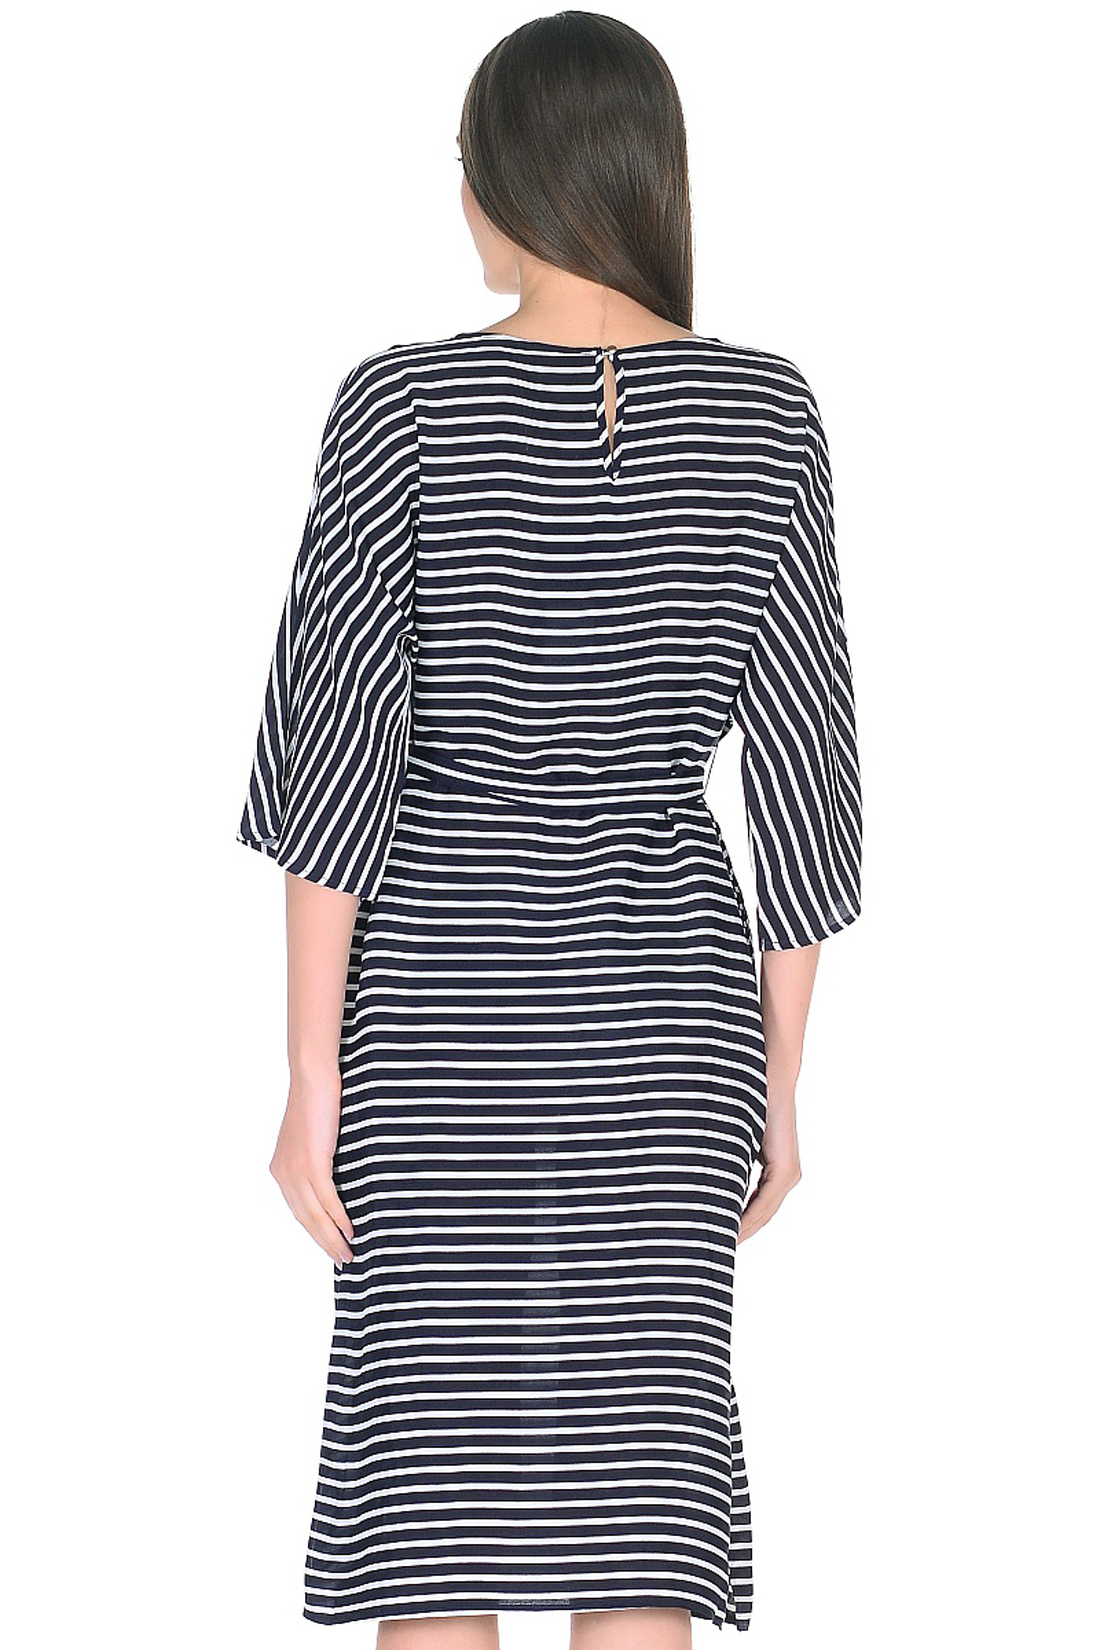 Платье в морскую полоску с поясом (арт. baon B458036), размер XS, цвет dark navy striped#синий Платье в морскую полоску с поясом (арт. baon B458036) - фото 2